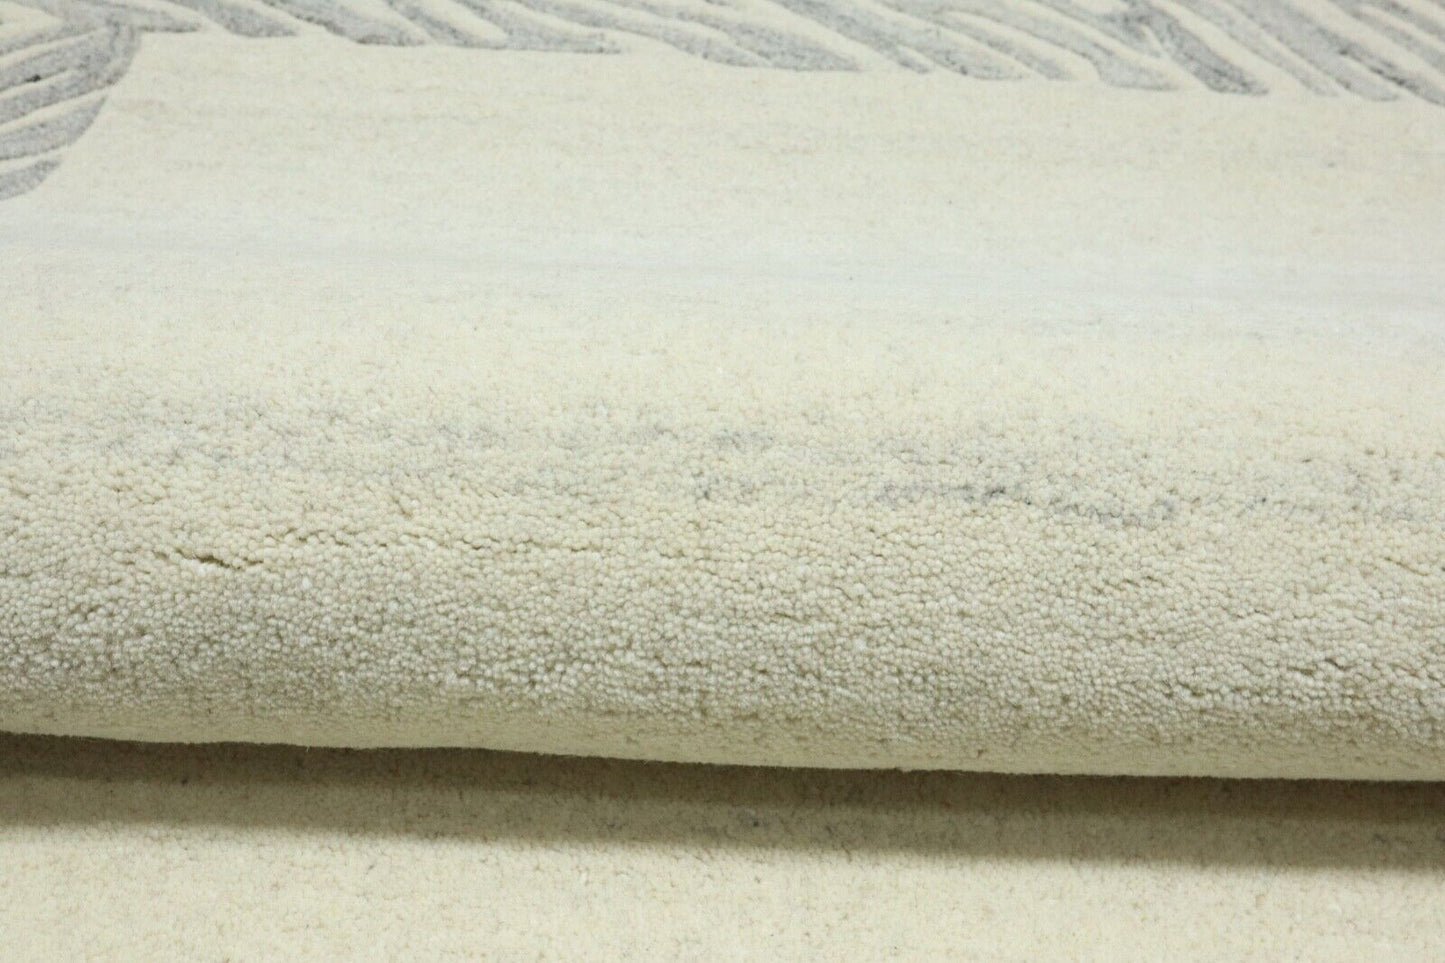 Teppich 100% Wolle 120X180 cm Handarbeit Beige Grau Handgetuftet T968